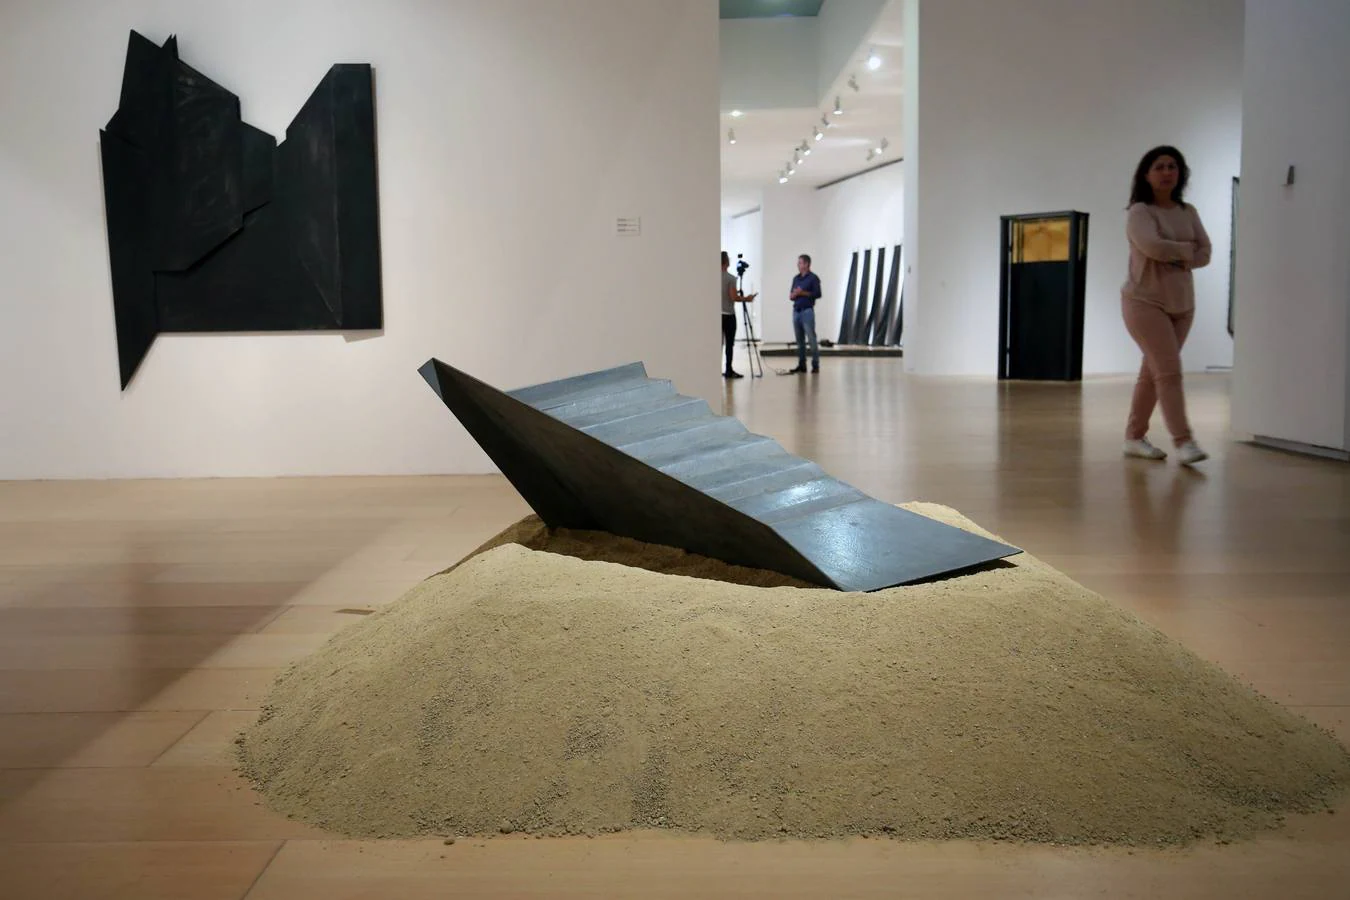 El Institut Valencià d'Art Modern (IVAM) ha presentado este miércoles la exposición 'Ángeles Marco. Vértigo', con el objetivo de reivindicar a esta «pionera» artista valenciana, «fundamental para entender la transformación de la escultura en España en los años ochenta y noventa del siglo XX».